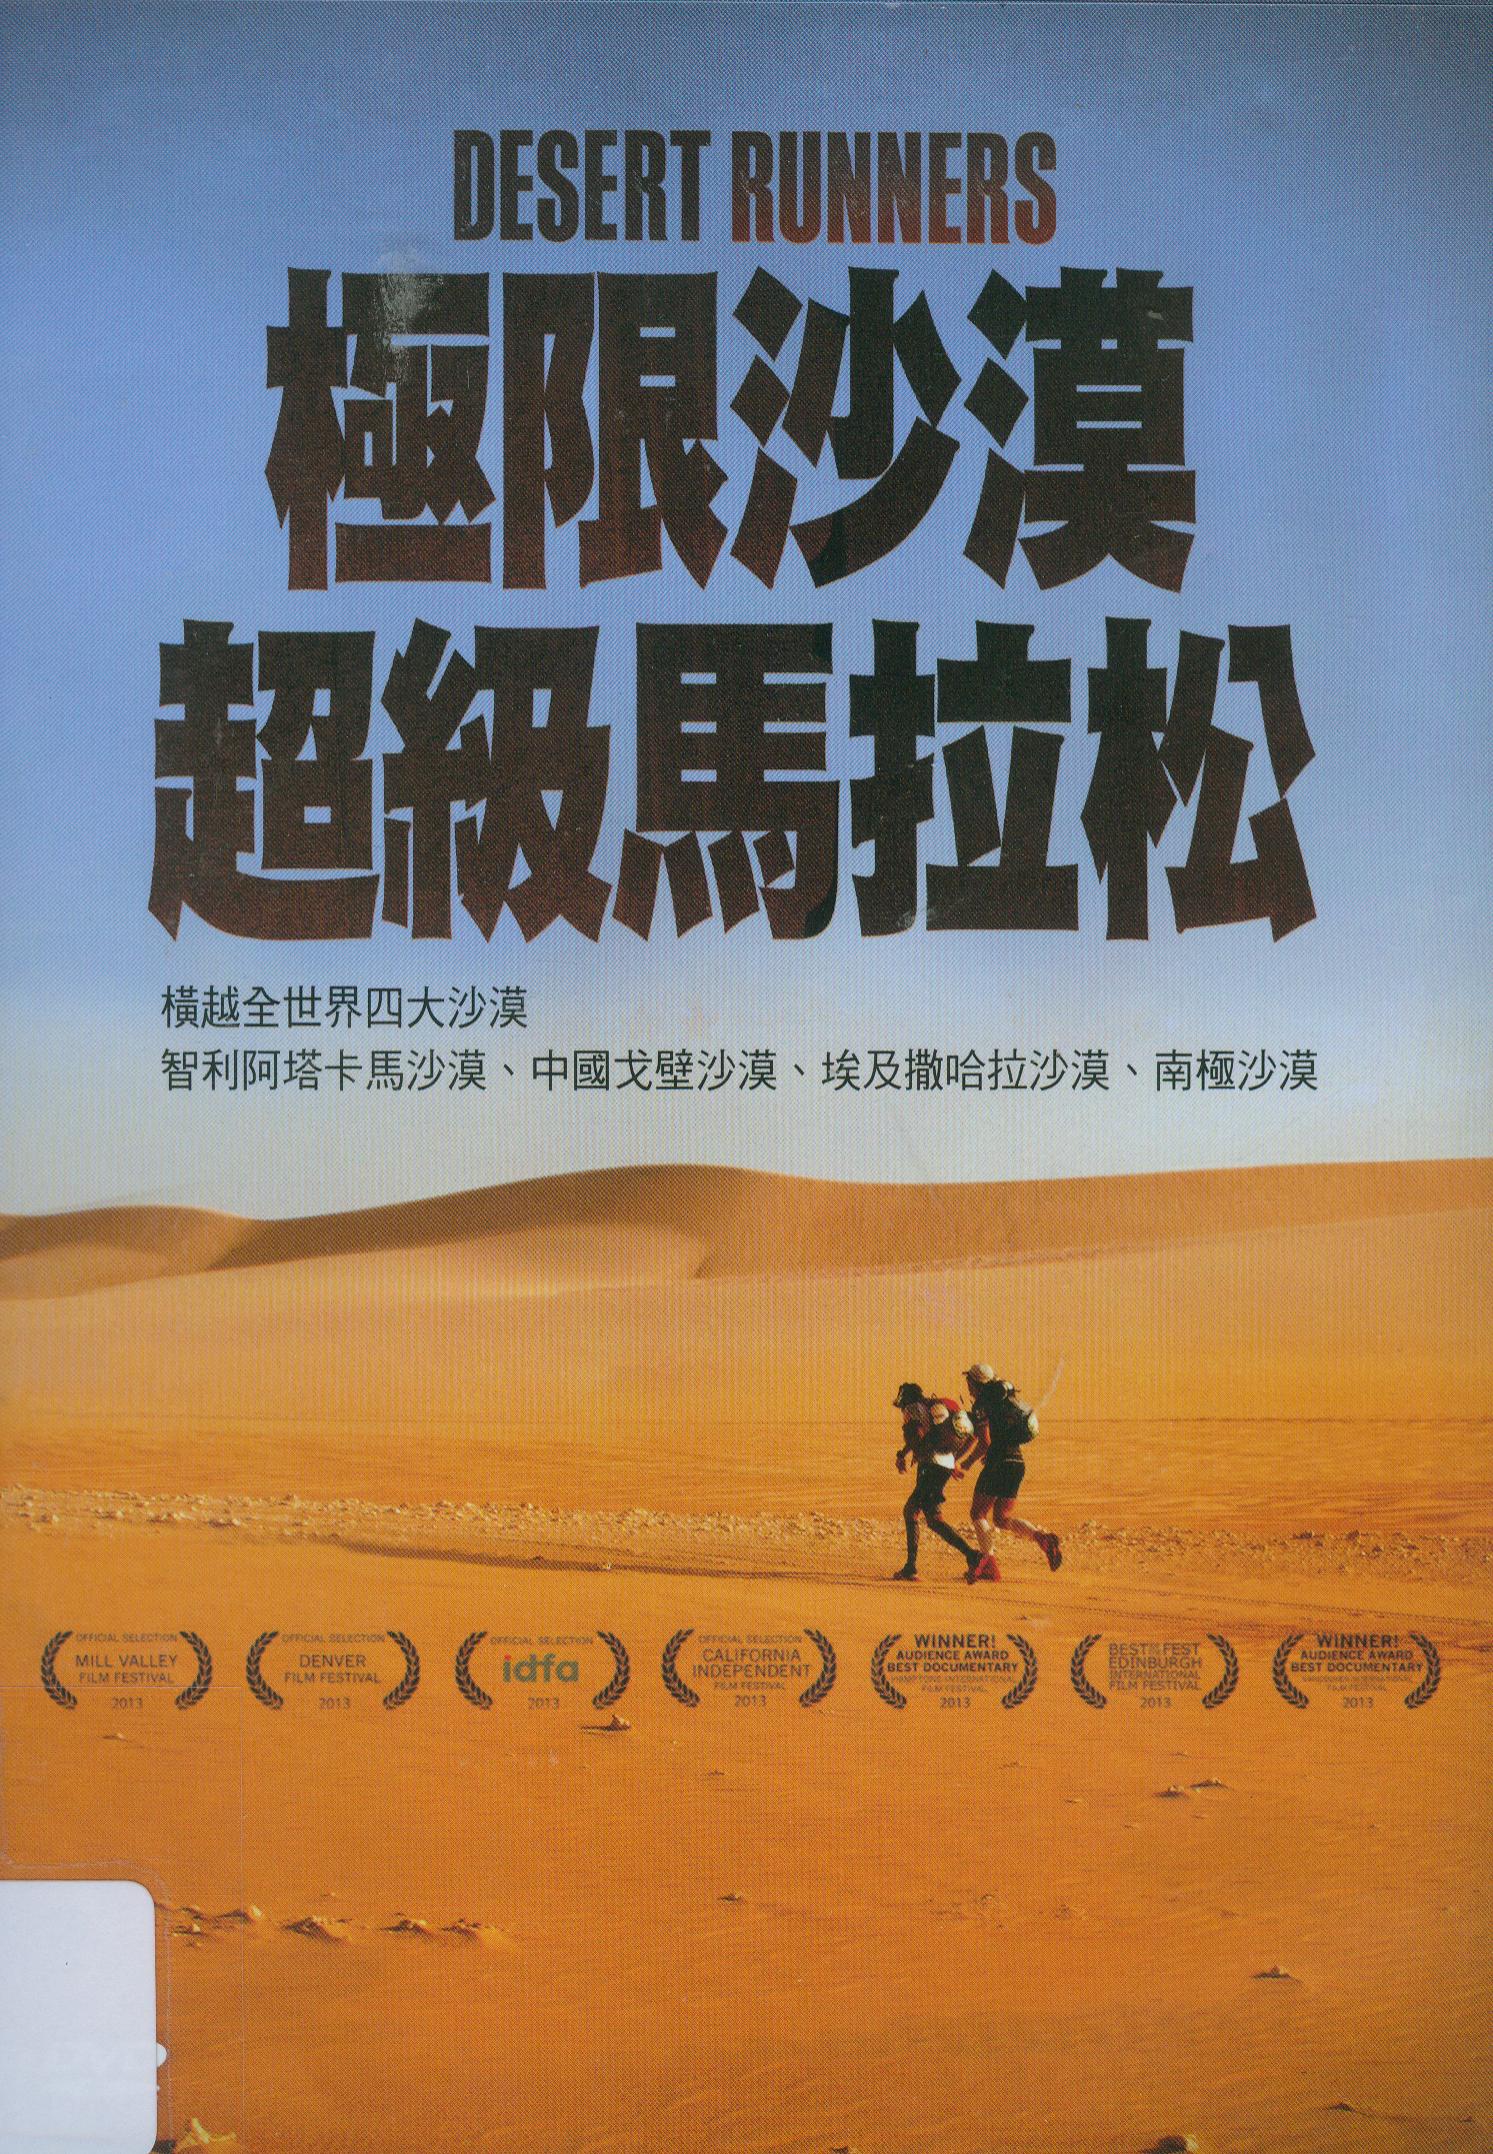 極限沙漠超級馬拉松[普遍級:紀錄片] : Dessert runners